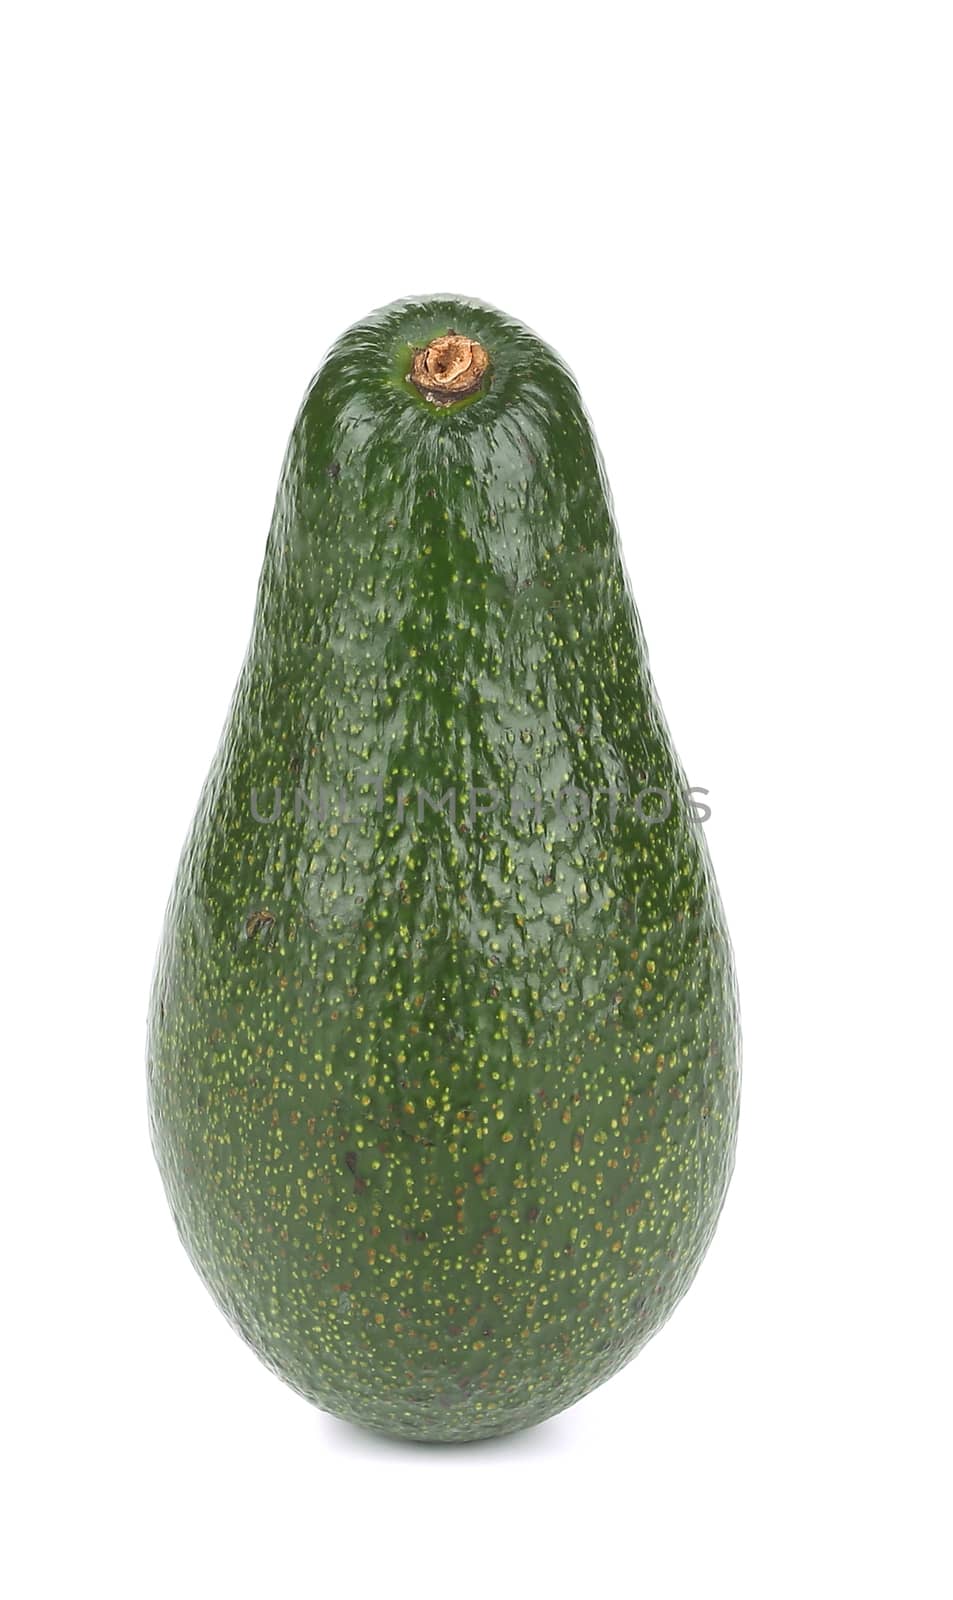 Fresh avocado. by indigolotos